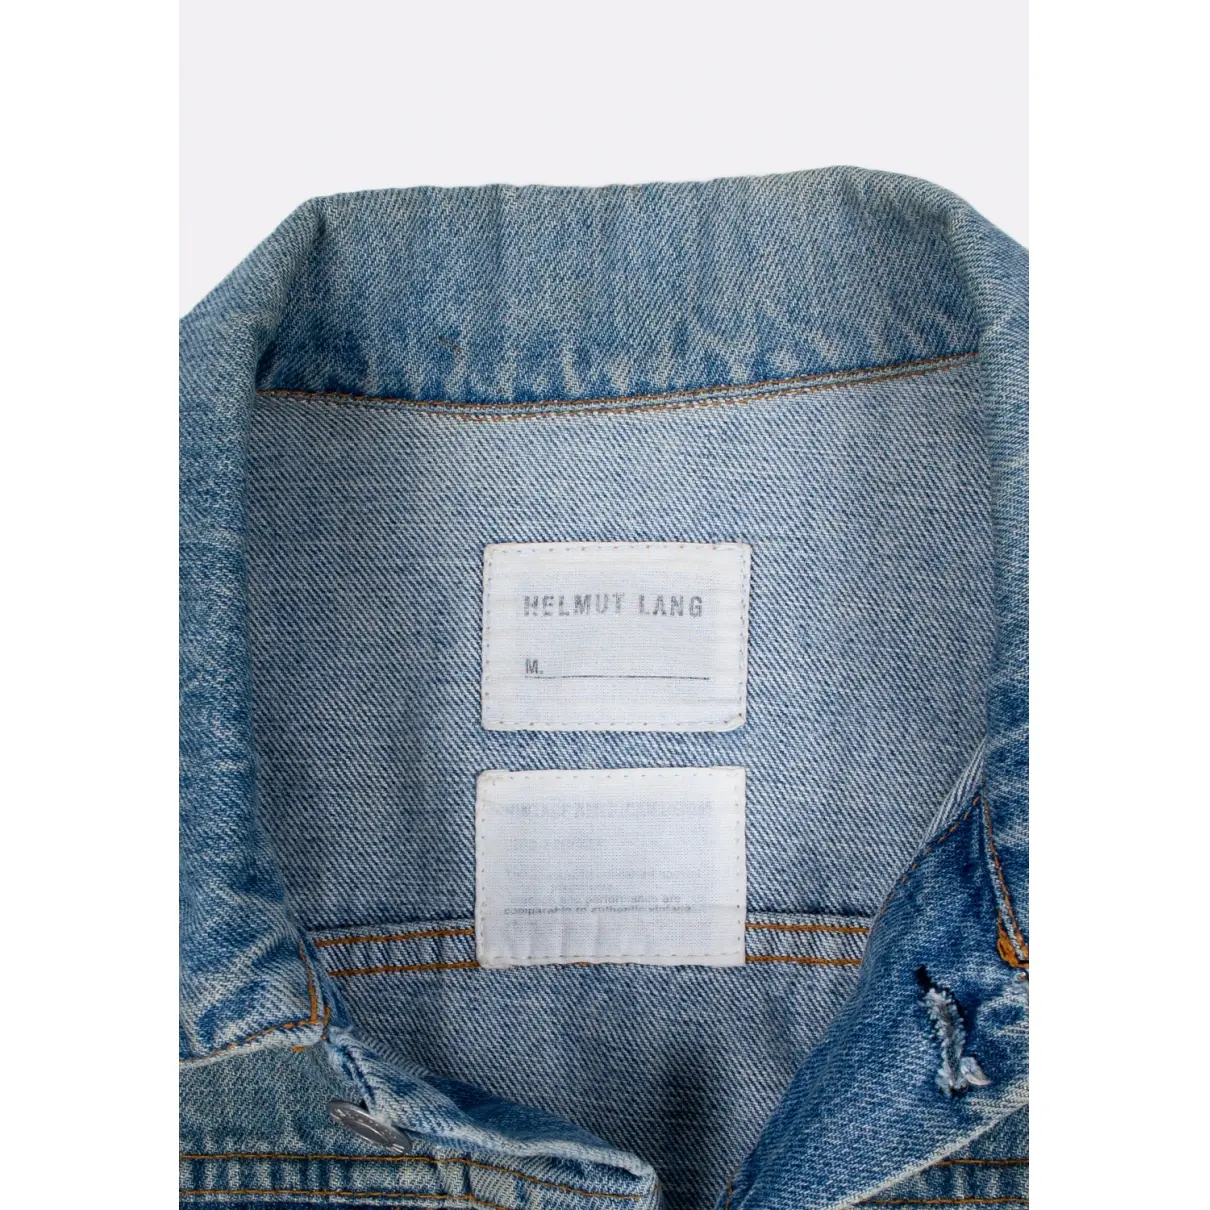 Buy Helmut Lang Jacket online - Vintage